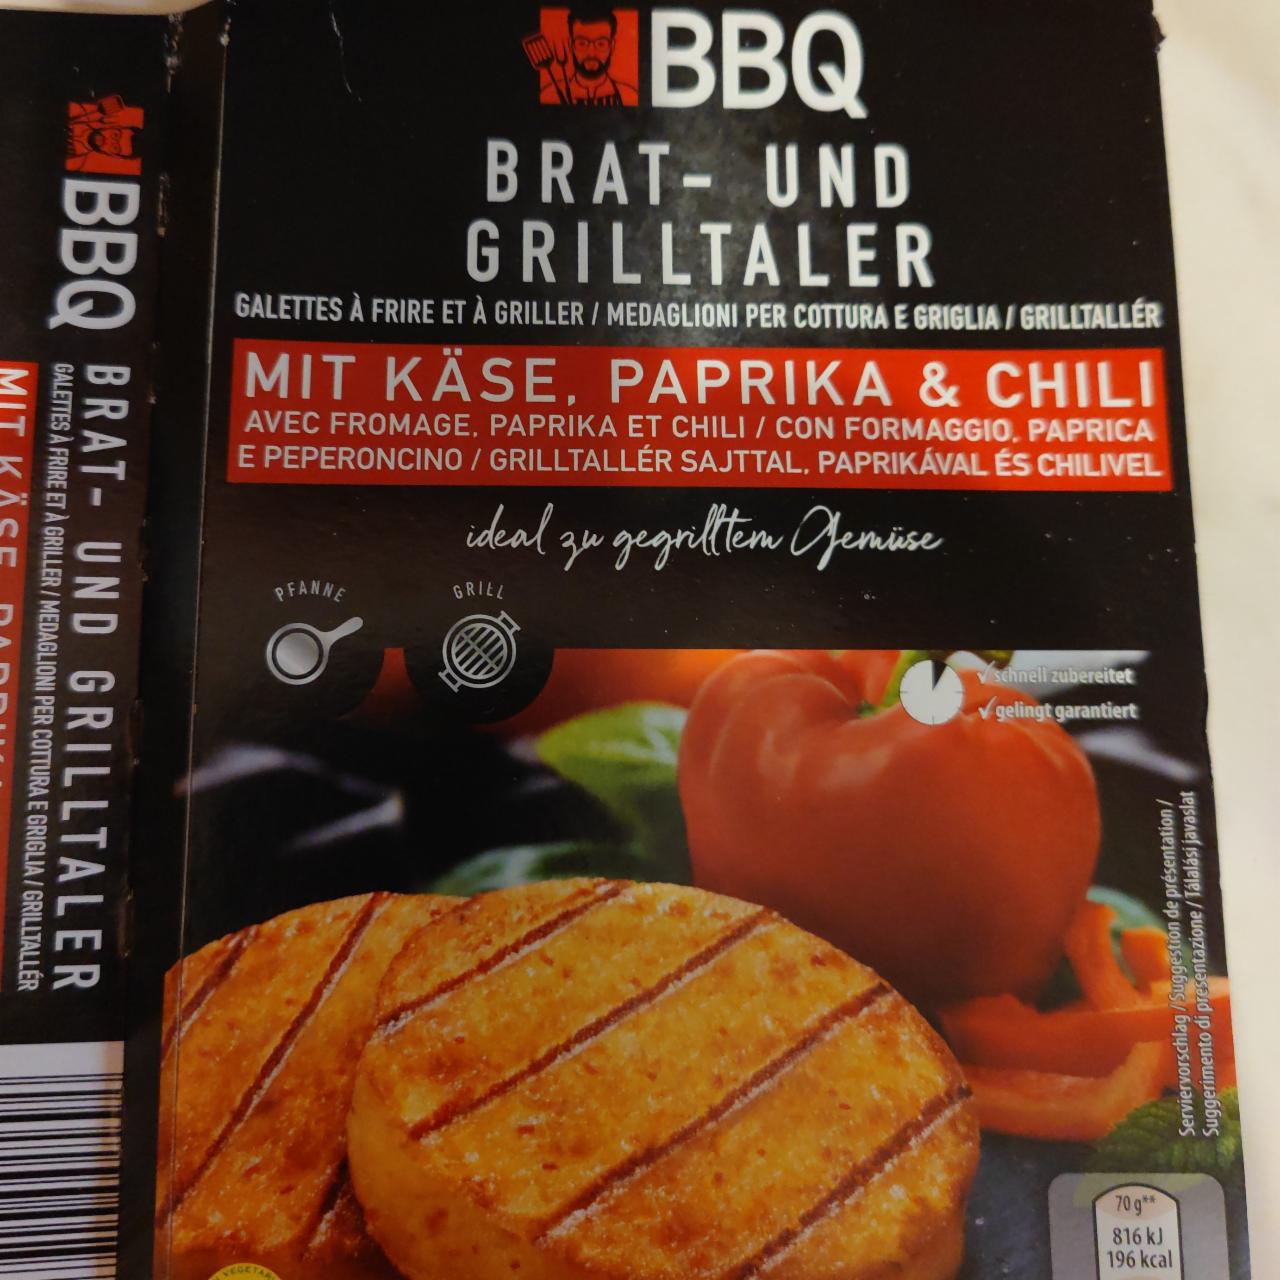 Fotografie - BBQ Brat und Grilltaler mit käse & paprika chilli